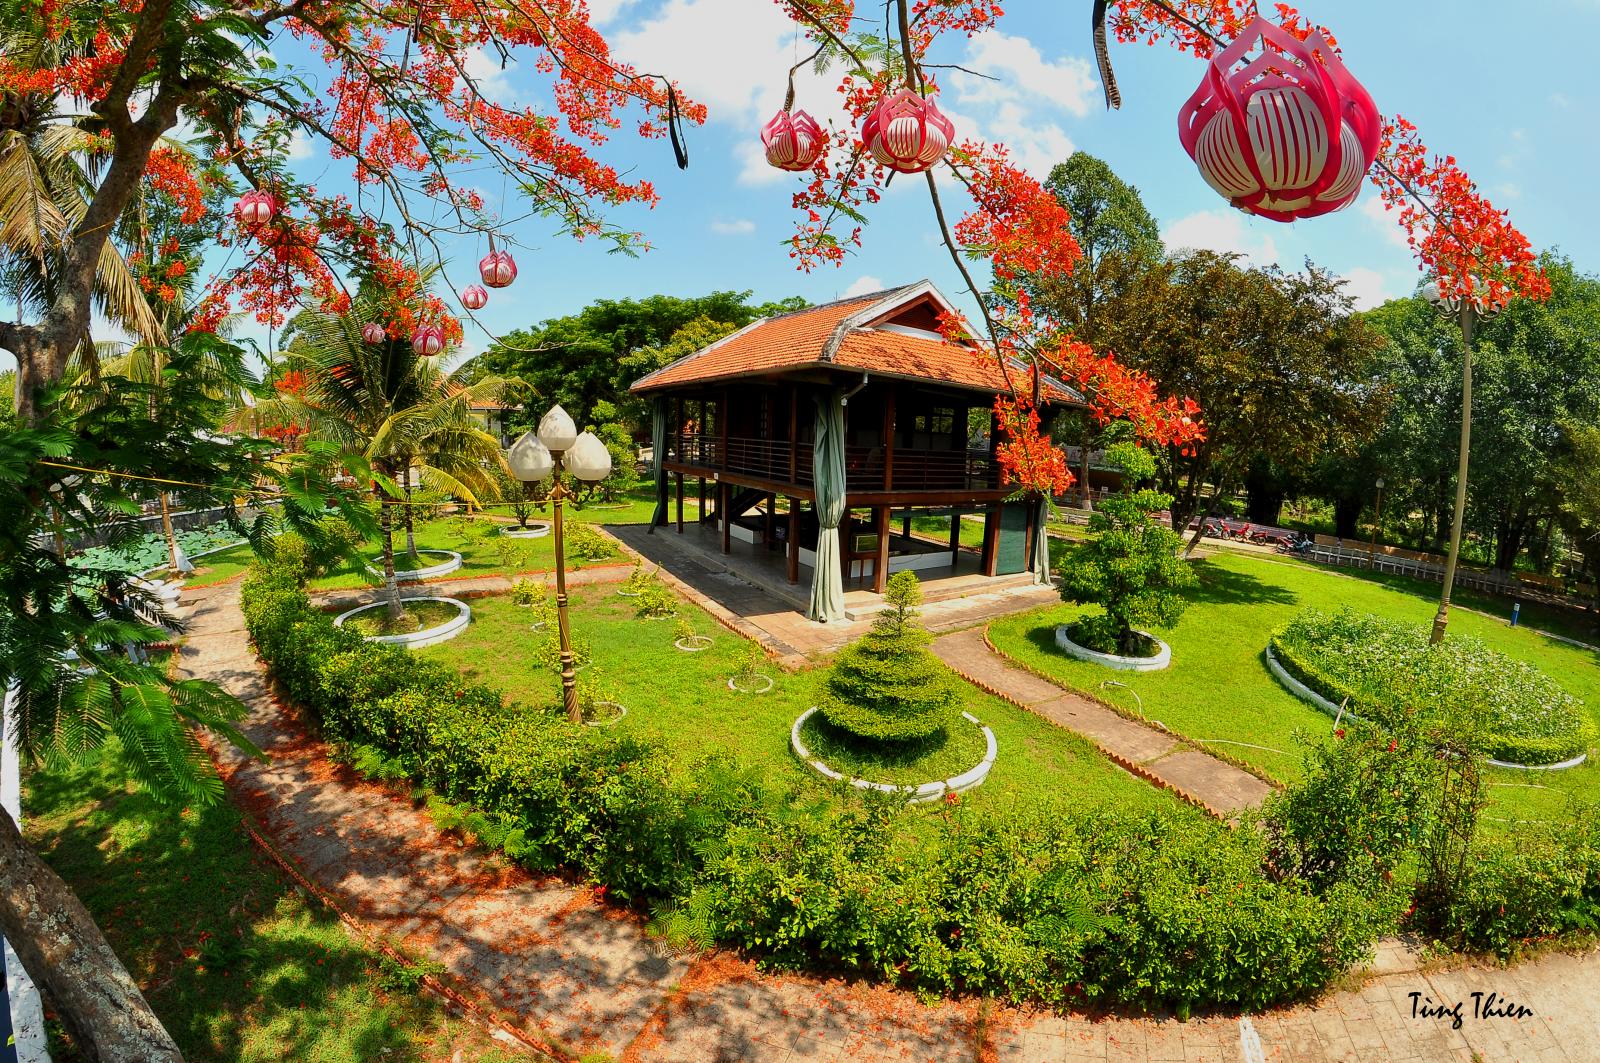 Tháng năm nhớ Bác về thăm mô hình Nhà sàn Bác Hồ tại Khu Di tích Nguyễn Sinh Sắc